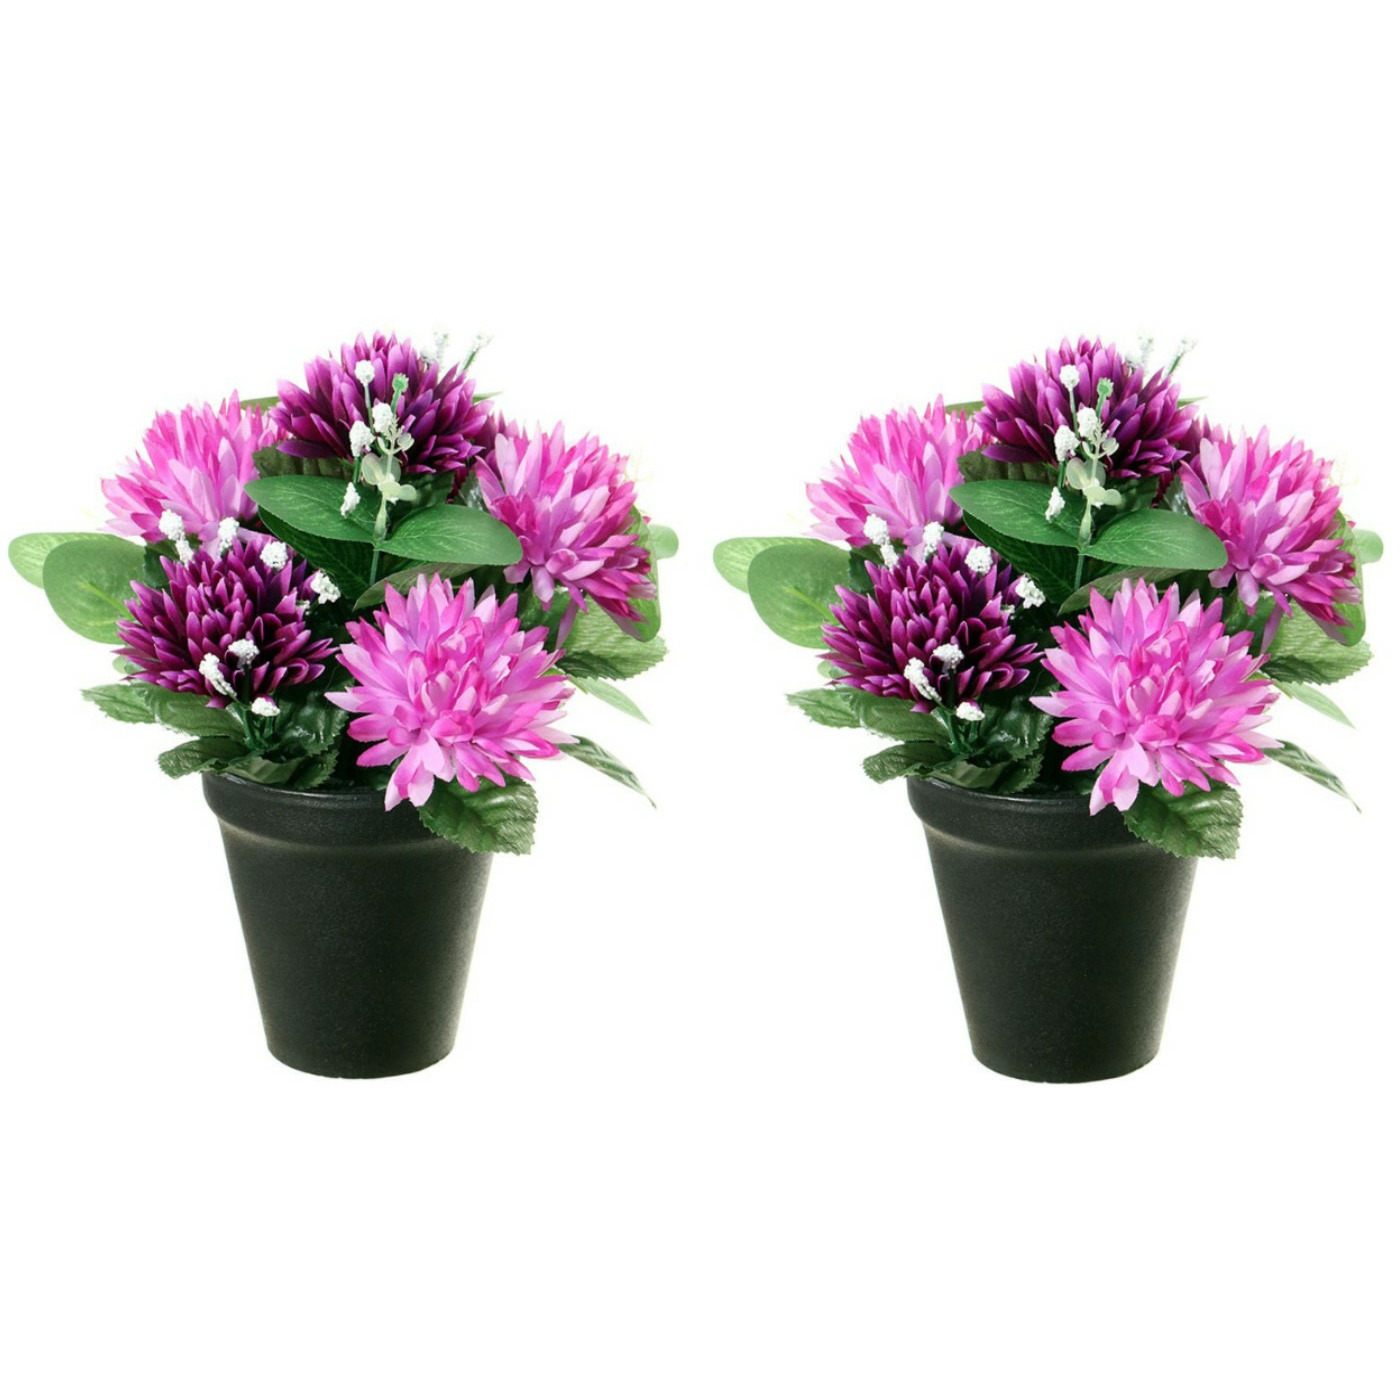 Kunstbloemen plant in pot - 2x - paars tinten - 23 cm - Bloemenstuk ornament -